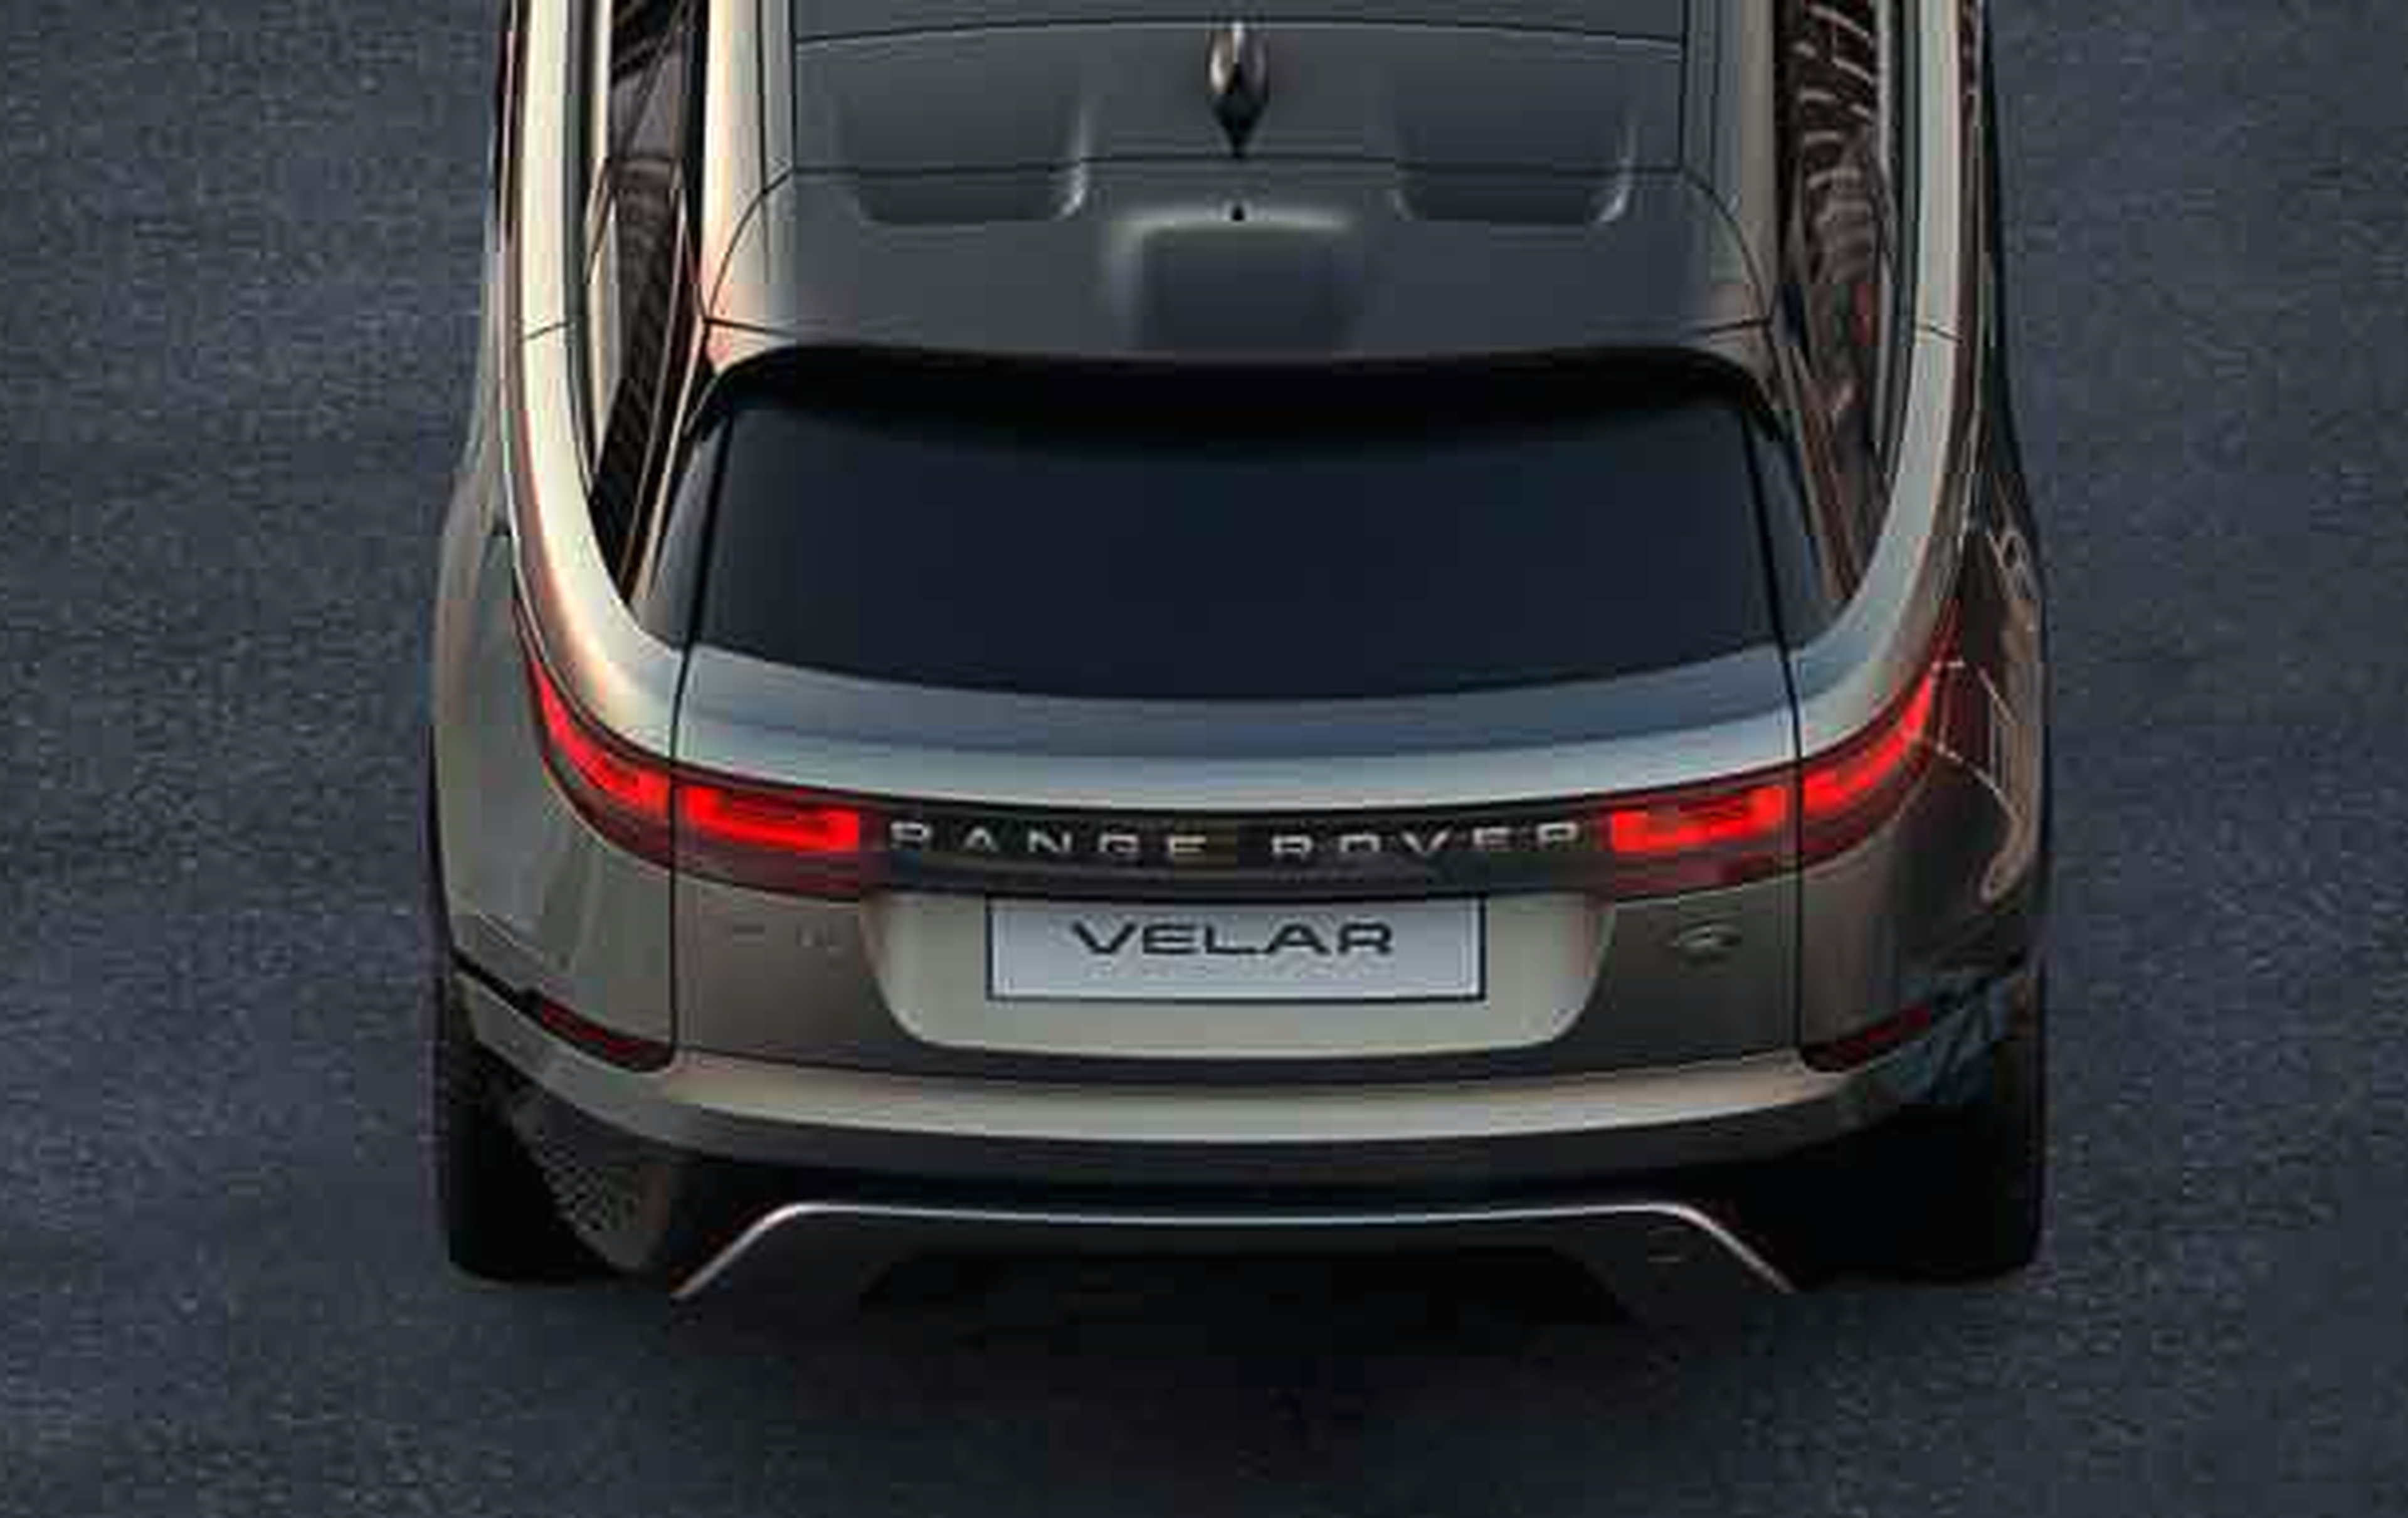 VÍDEO: Teaser del nuevo Range Rover Velar, te va a gustar